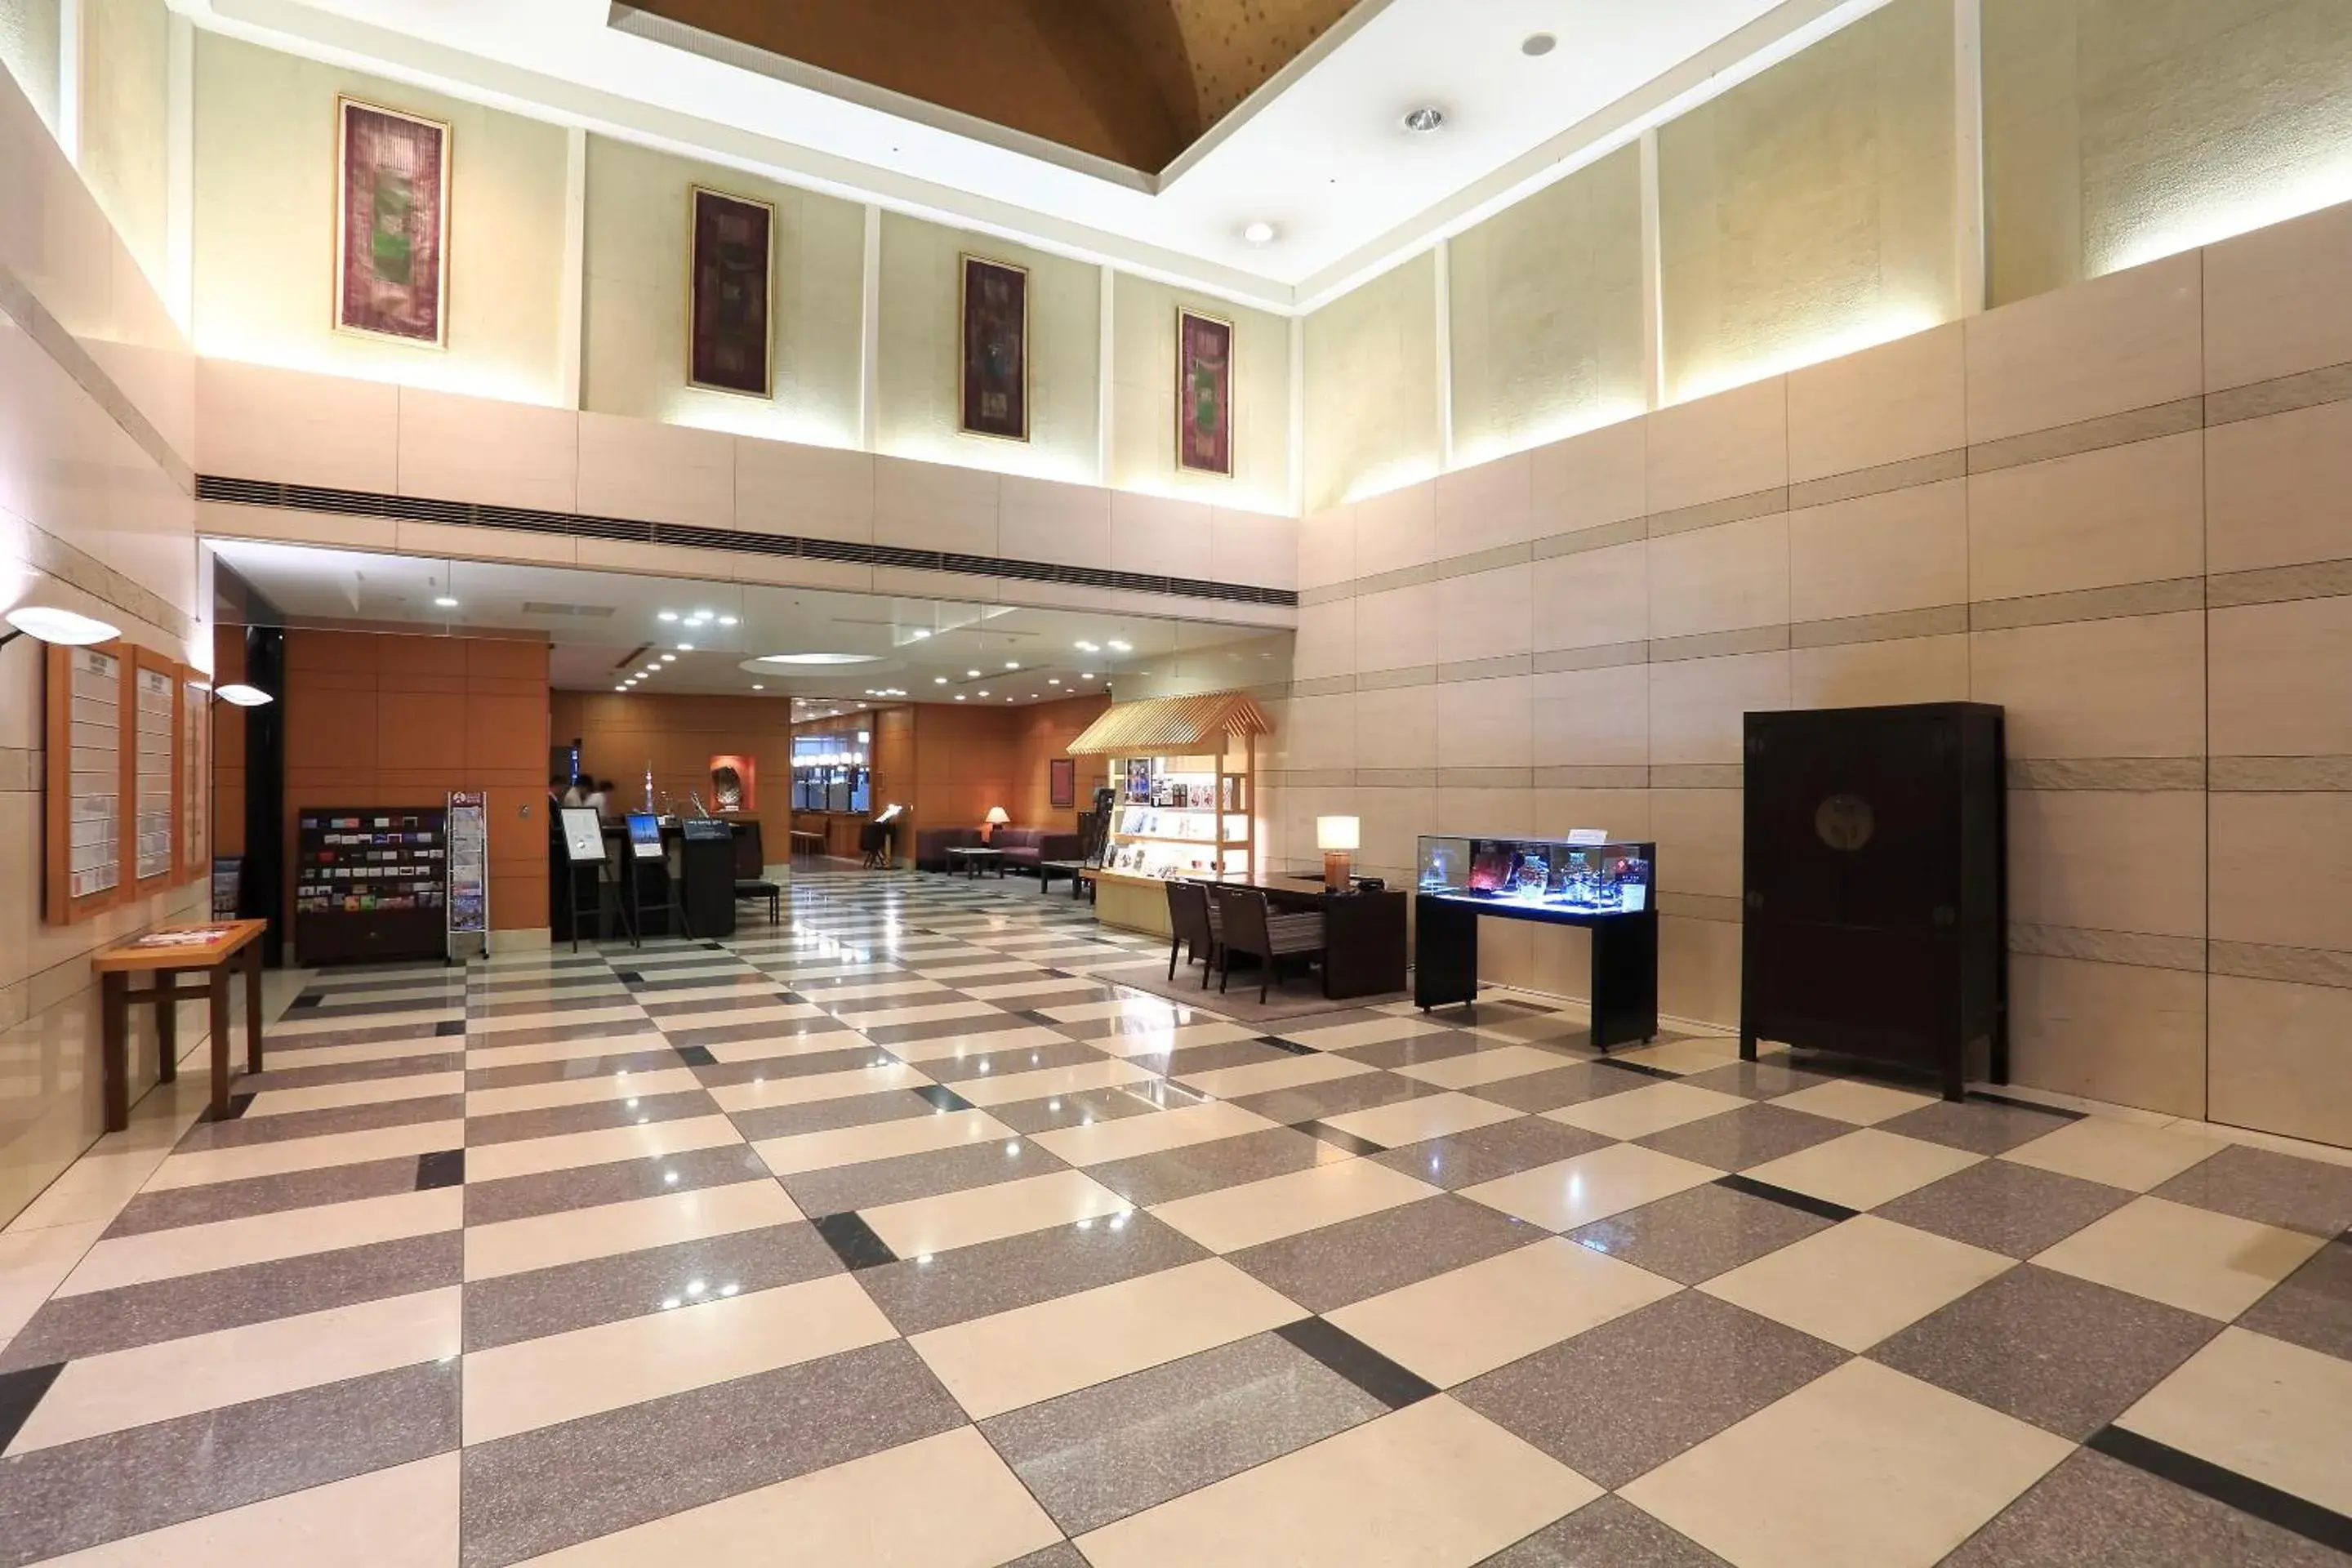 Lobby or reception, Lobby/Reception in Dai-ichi Hotel Ryogoku